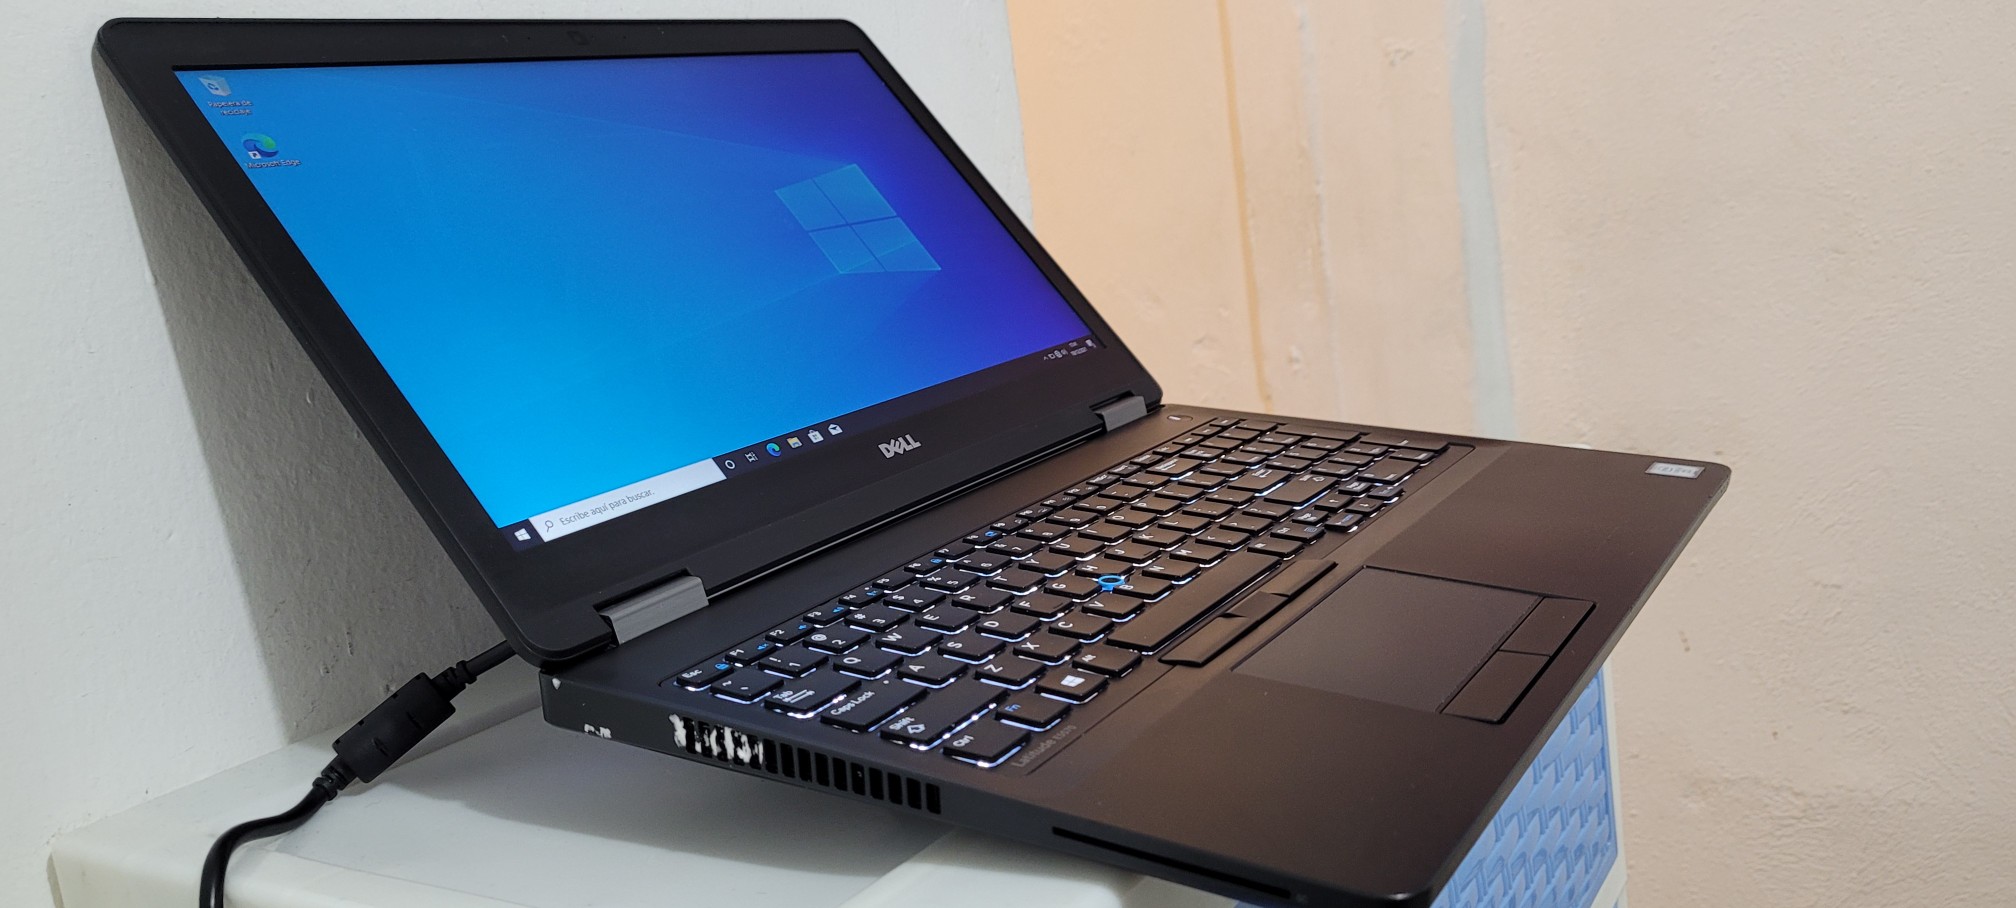 computadoras y laptops - Dell 5570 17 Pulg Core i5 6ta Gen Ram 8gb ddr4 Disco 128gb SSD Y 320GB New 1